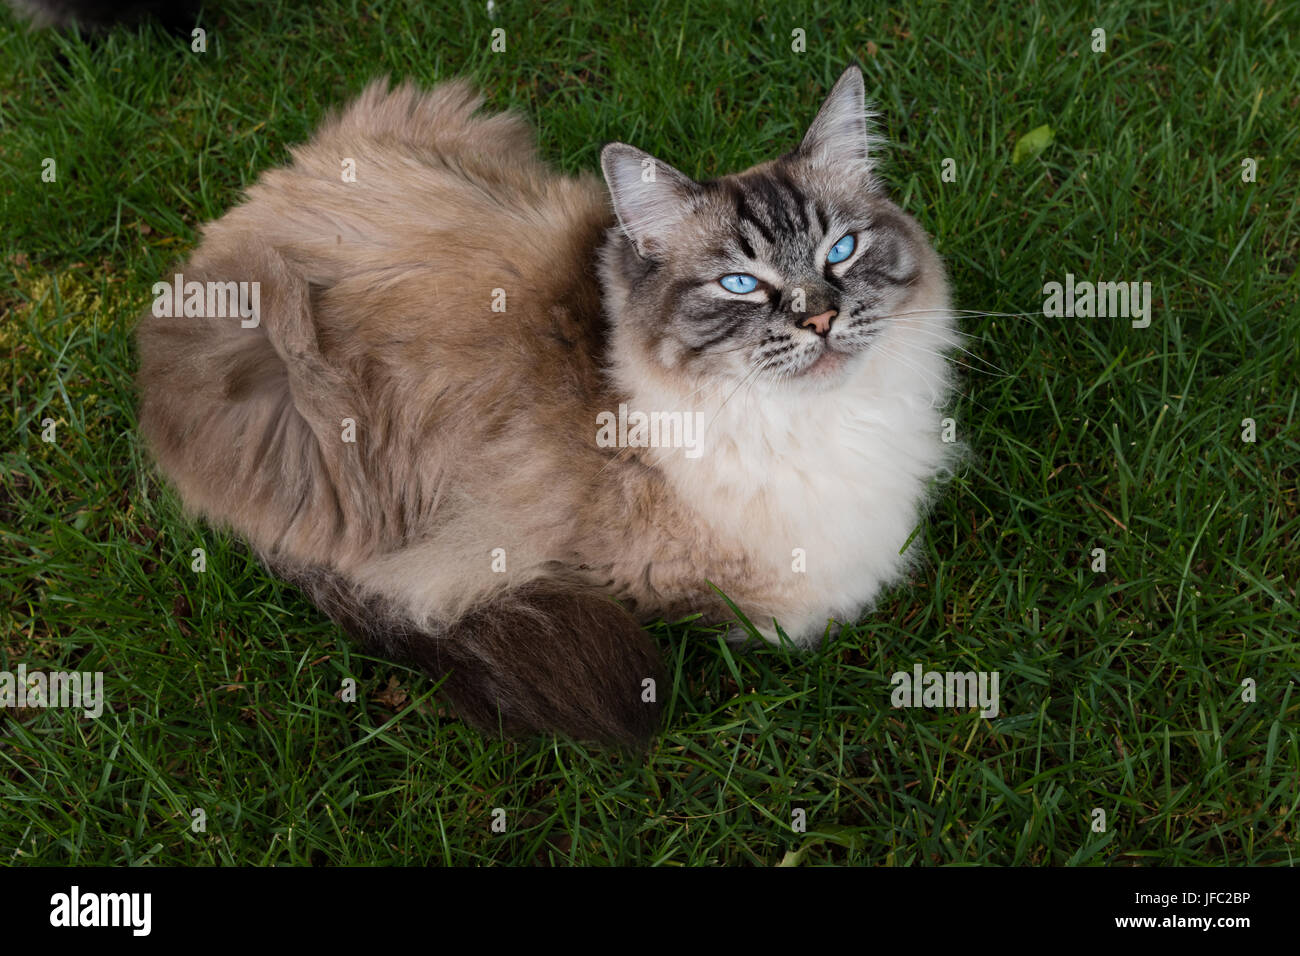 Seal Lynx Point Ragdoll Katze auf Grass Outdoor Portrait. Stockfoto